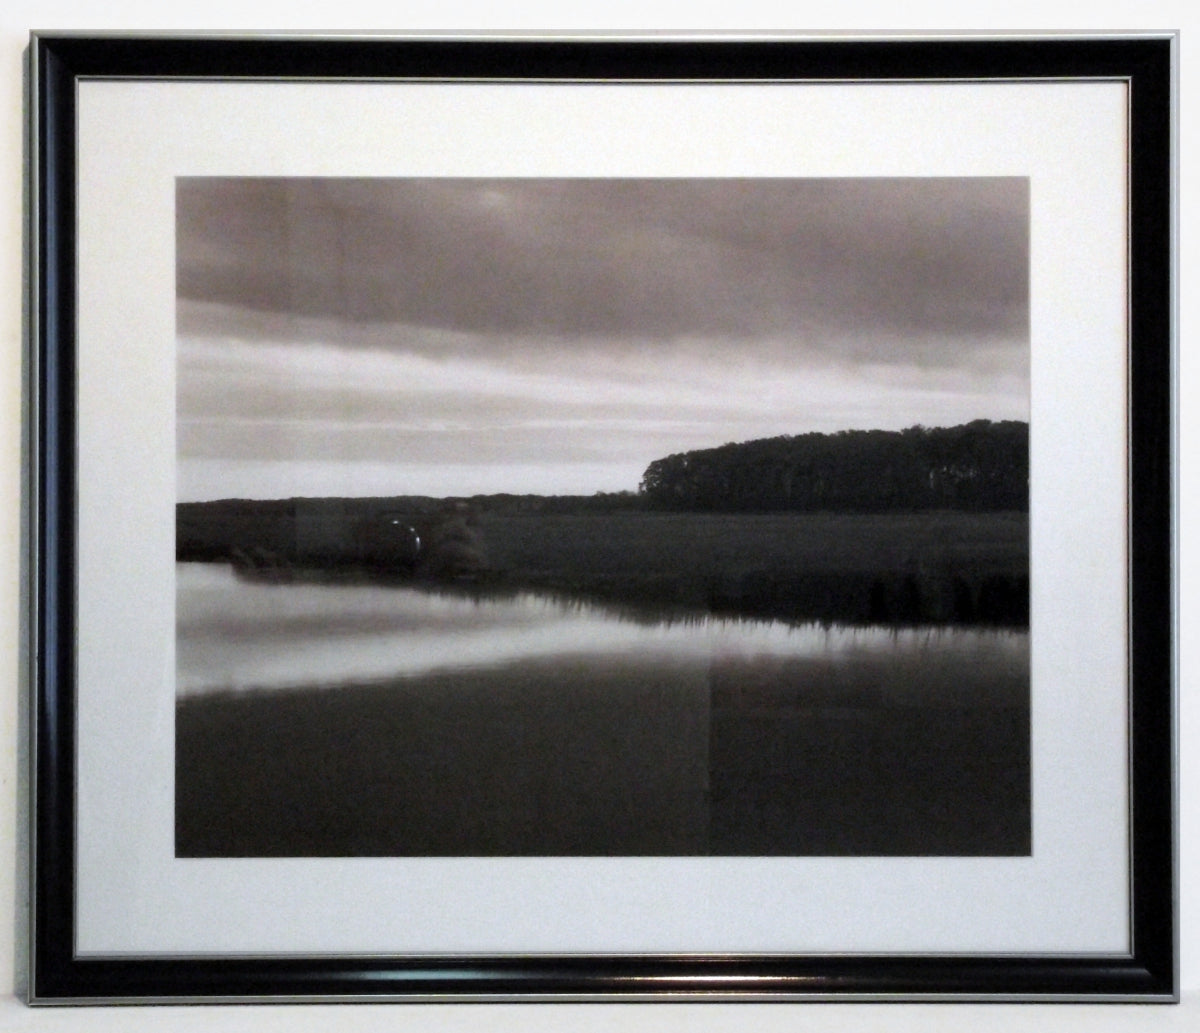 Obraz - Pejzaż, jezioro, widok na brzeg - reprodukcja w ramie A6555 60x50 cm - Obrazy Reprodukcje Ramy | ergopaul.pl